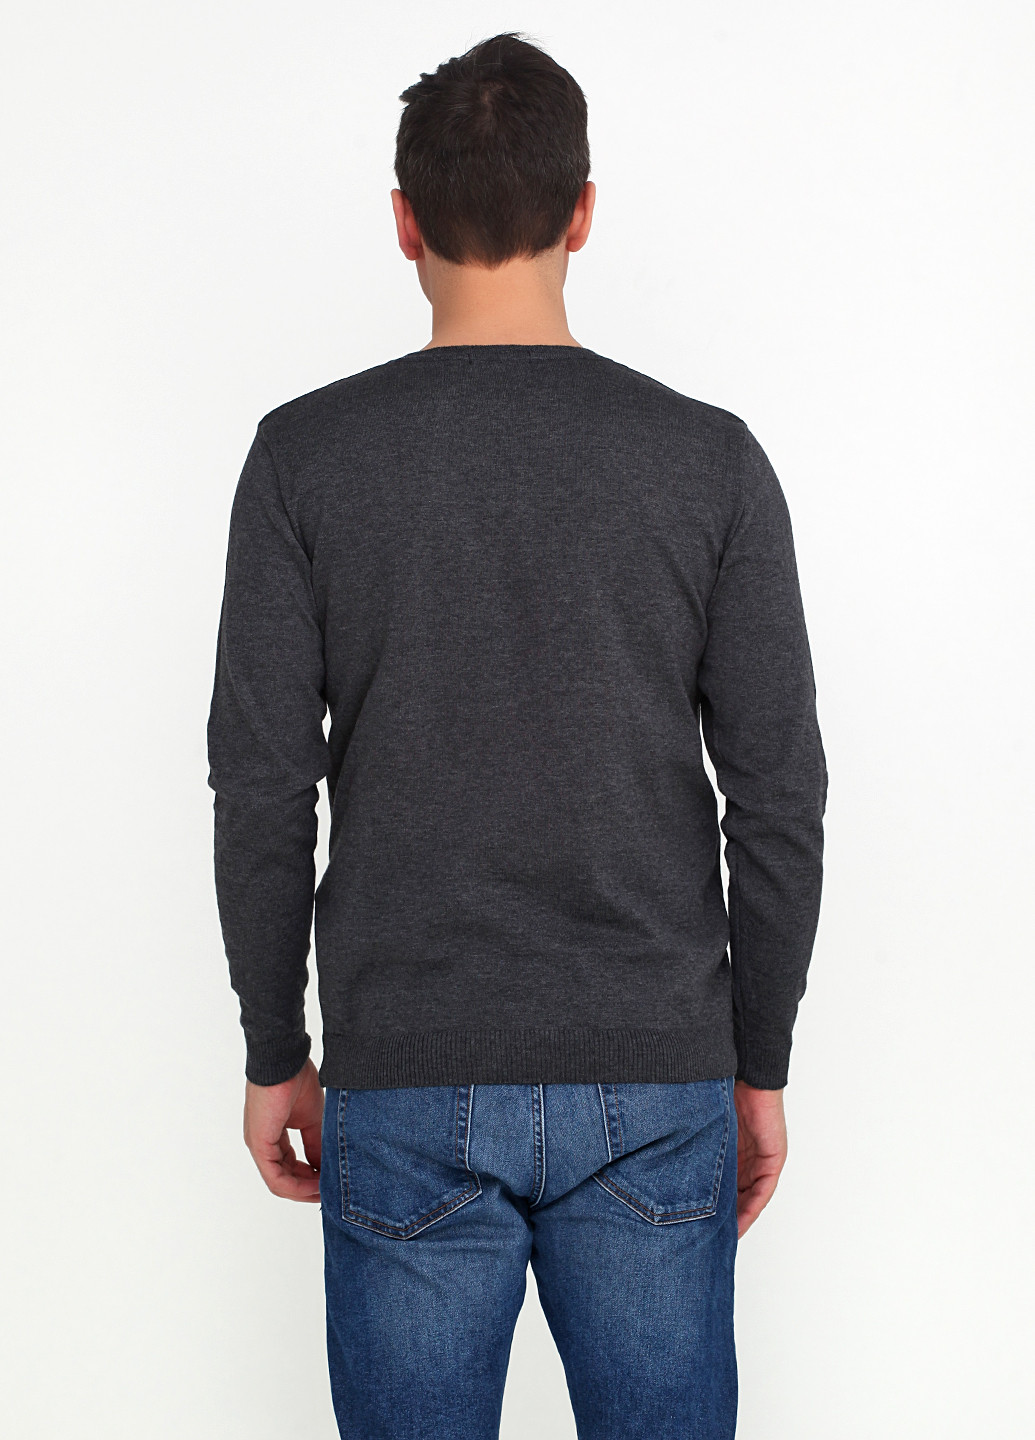 Темно-серый демисезонный пуловер пуловер Zaldiz